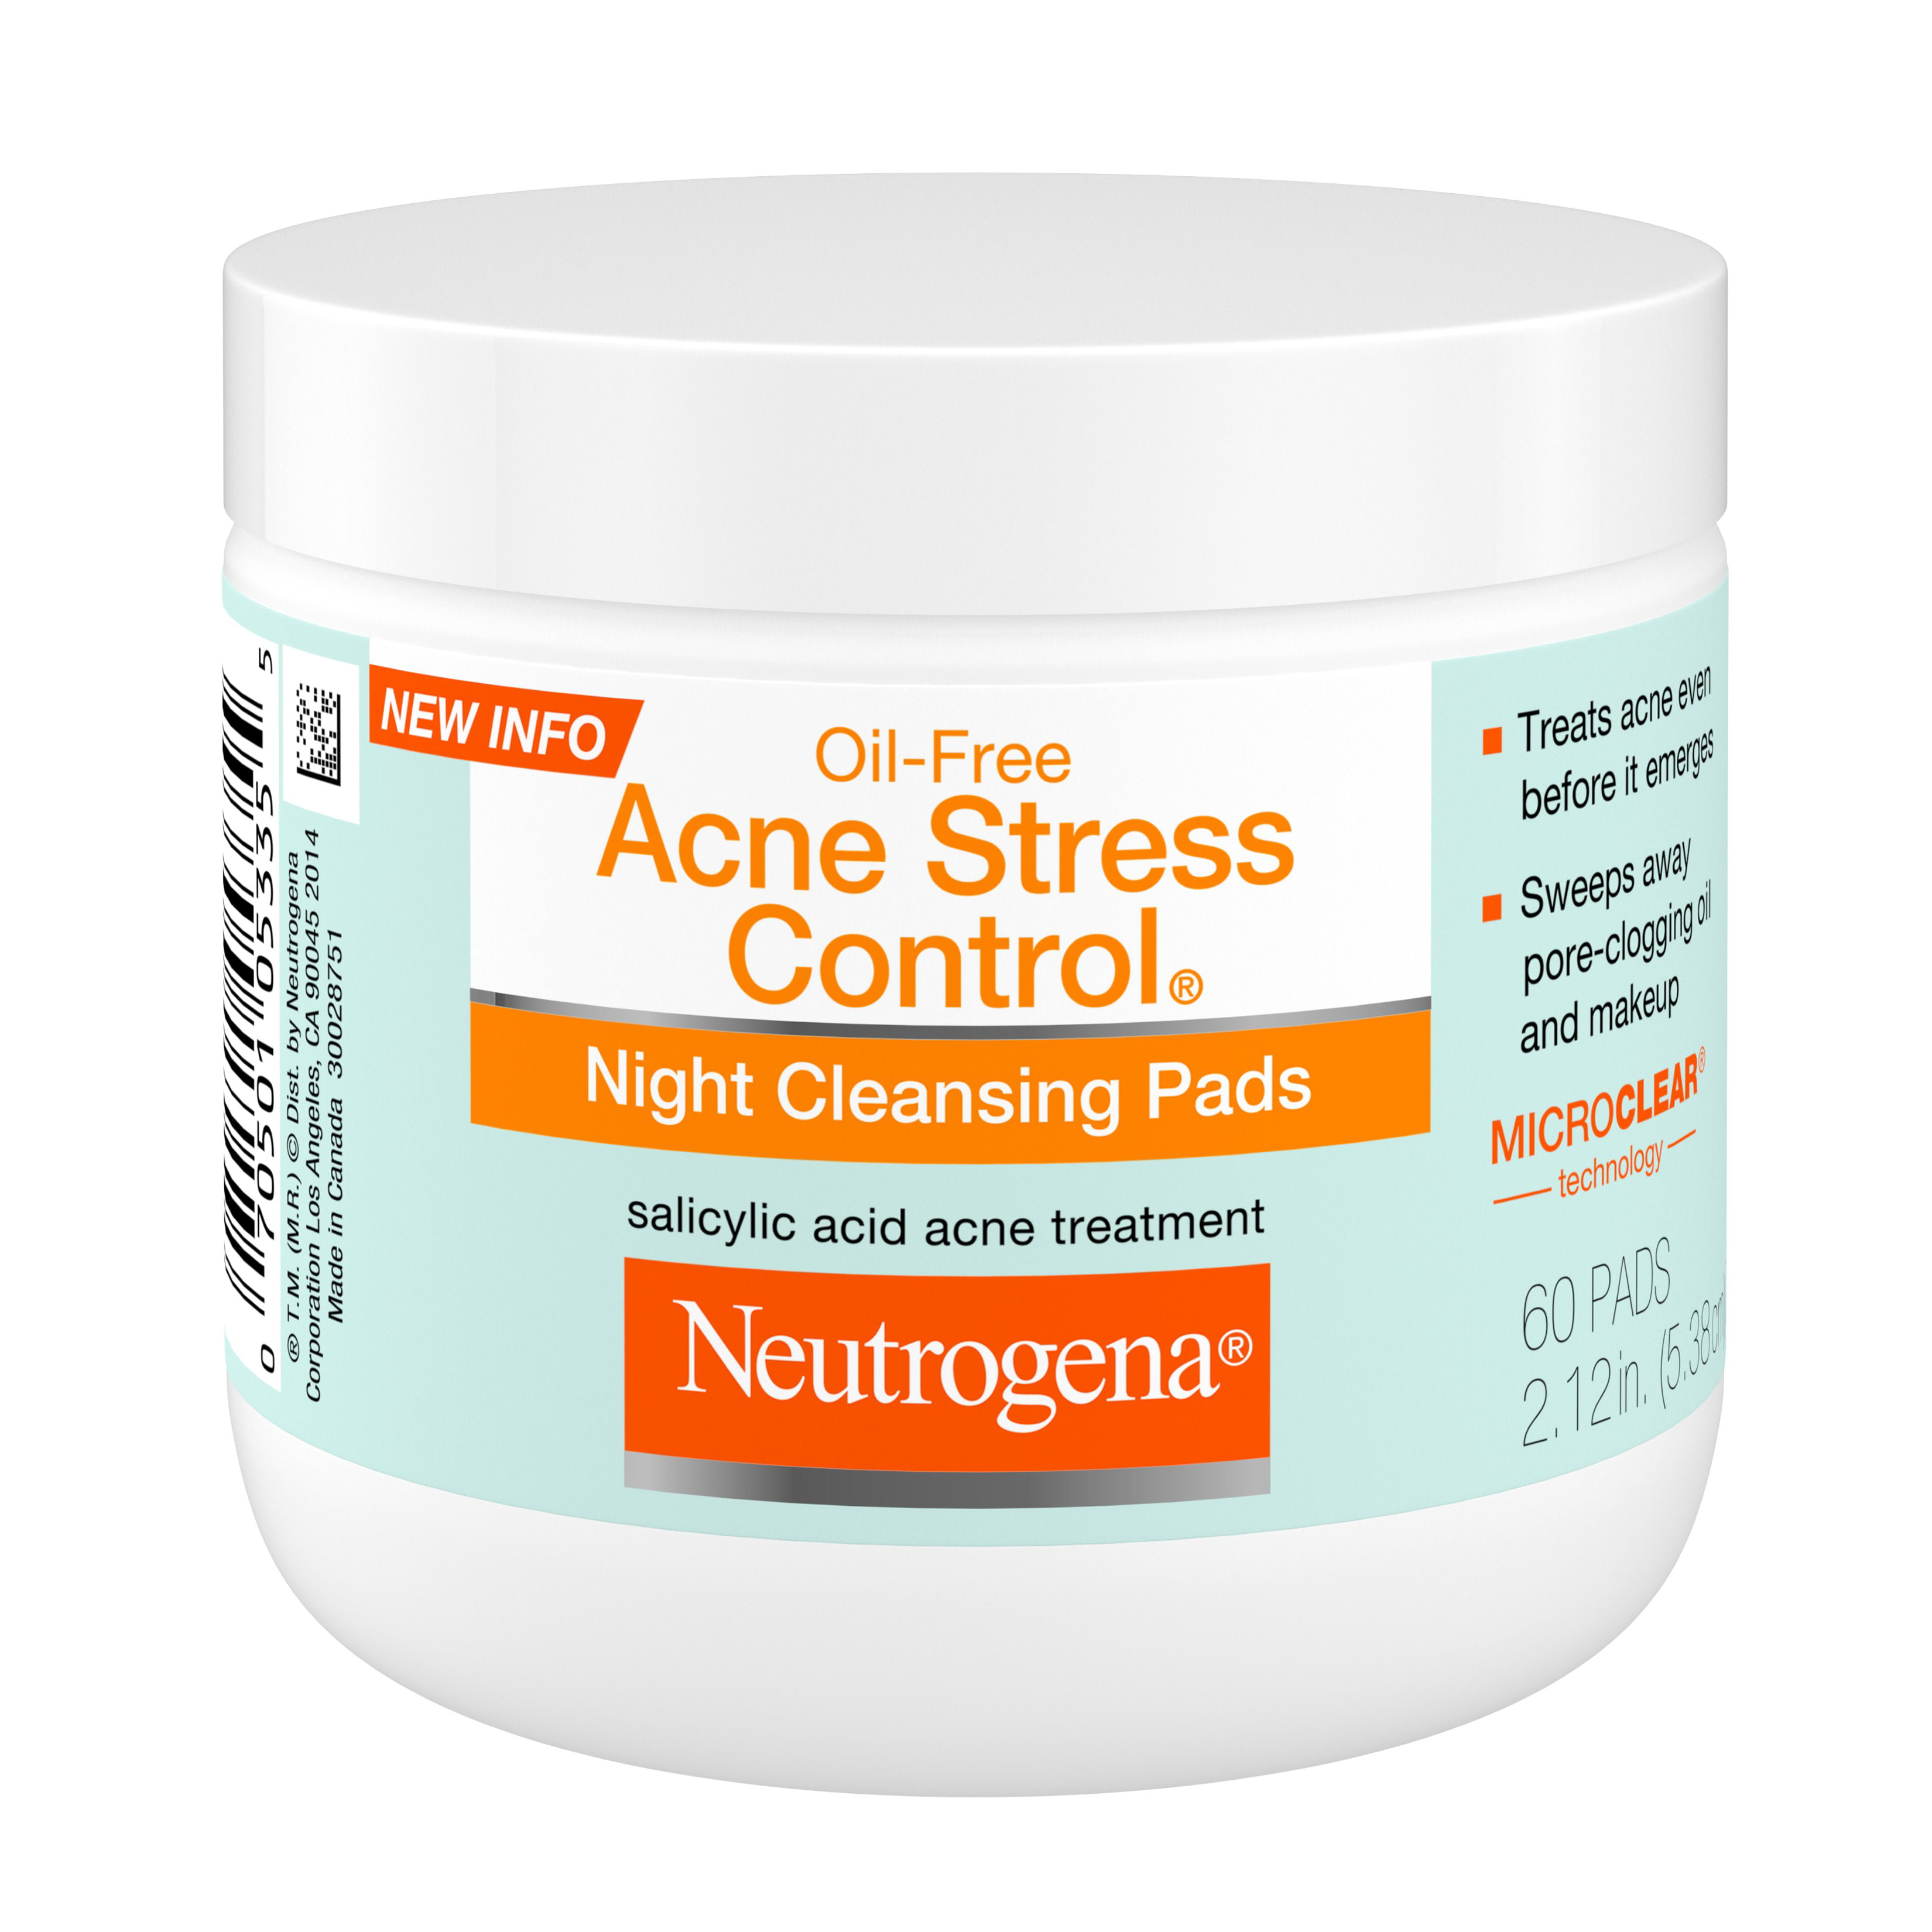 Neutrogena acne treatment